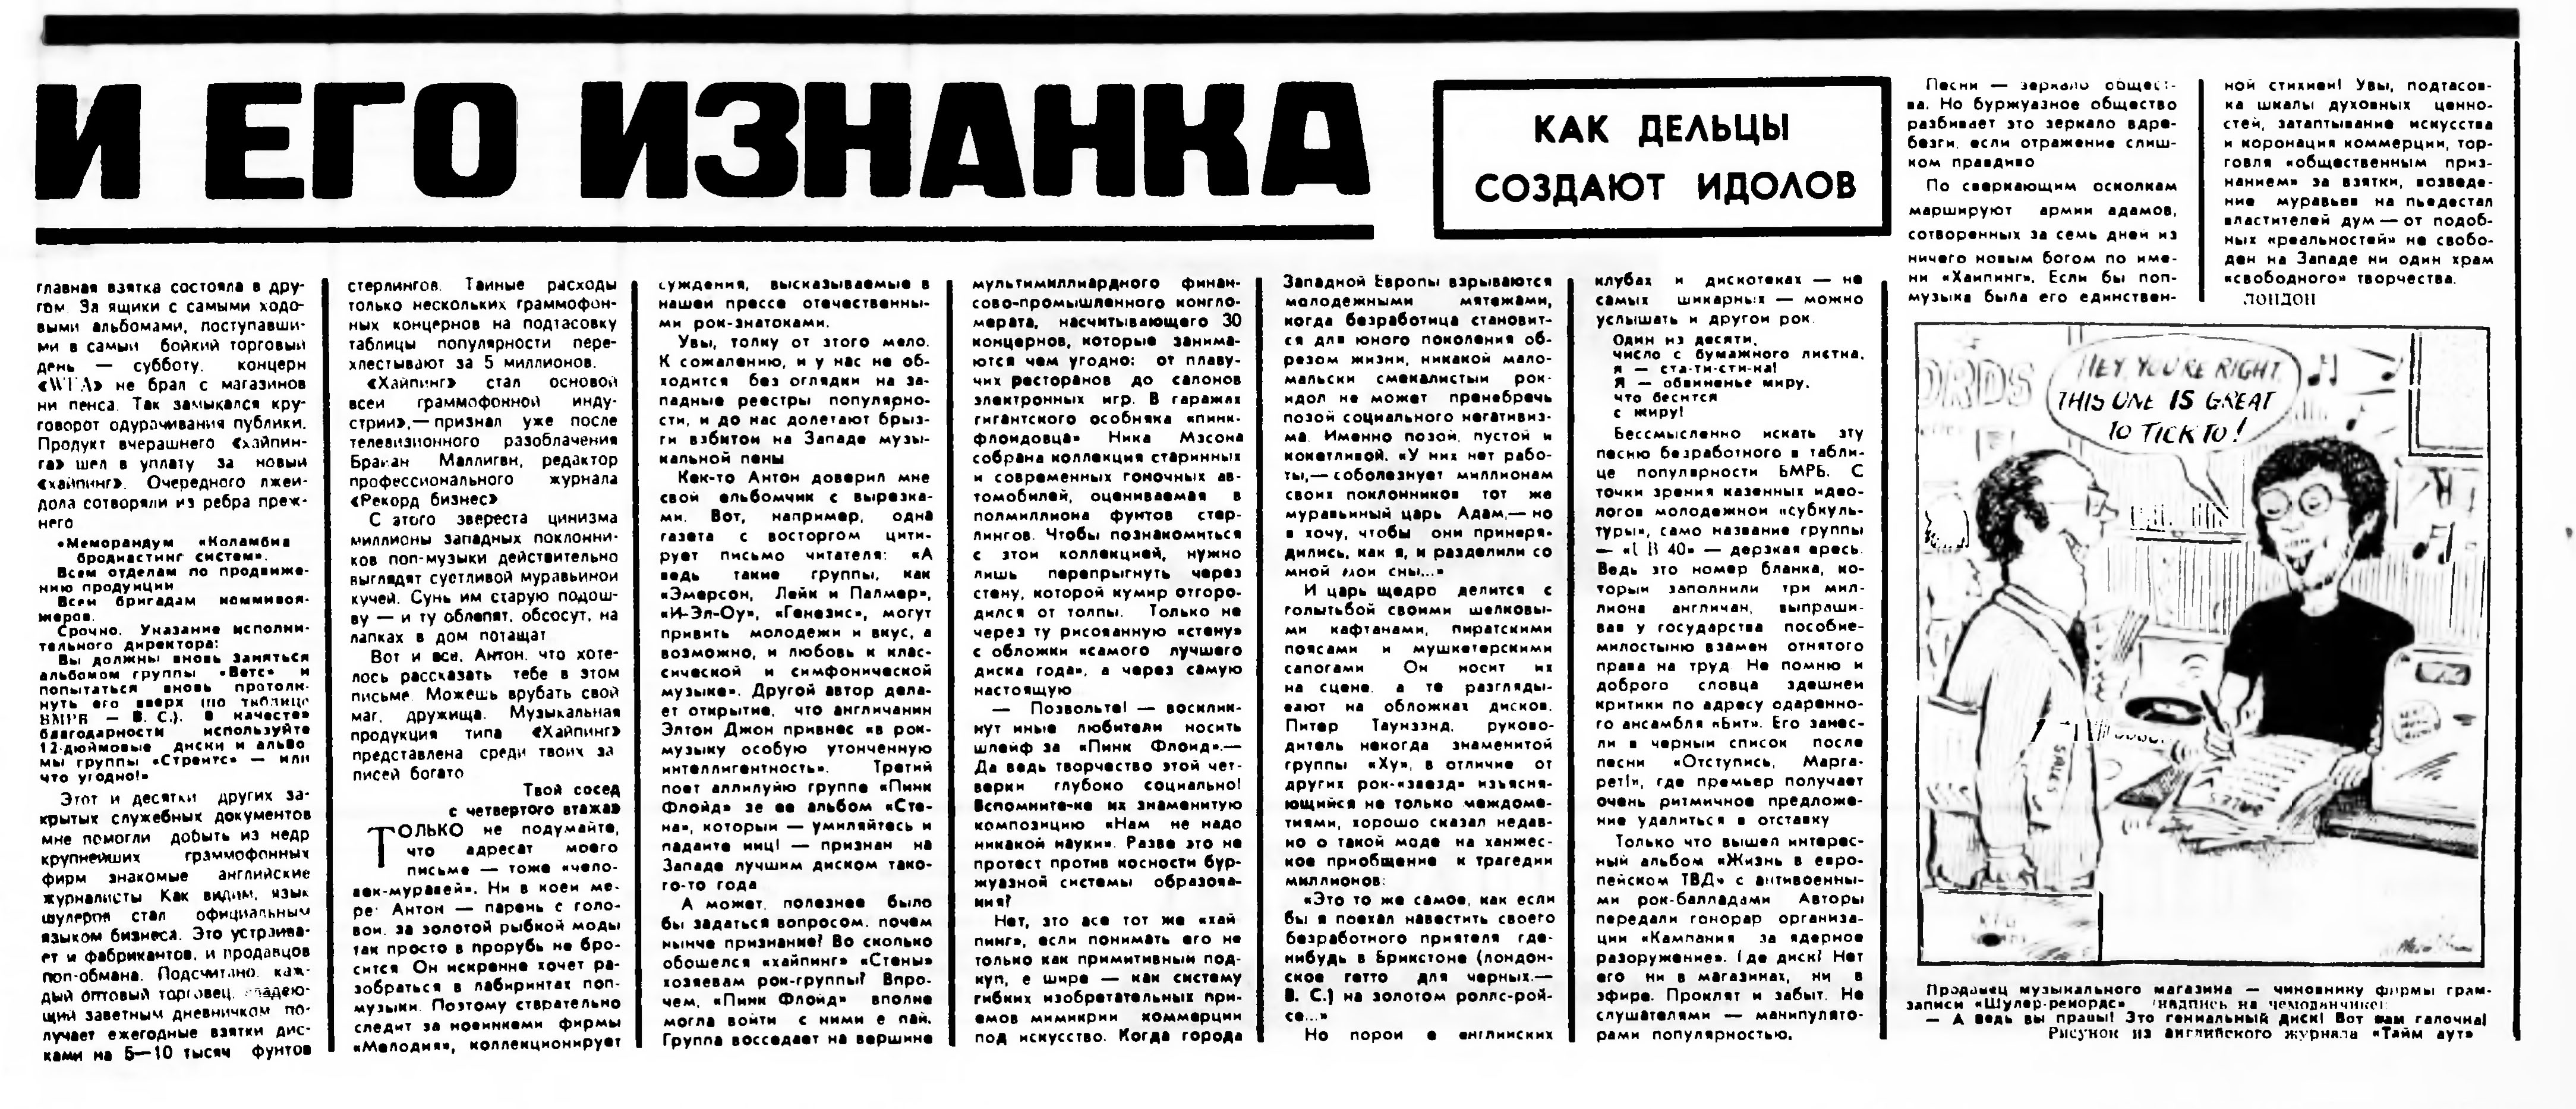 Газета апрель. "Литературная газета" март 1978 год..